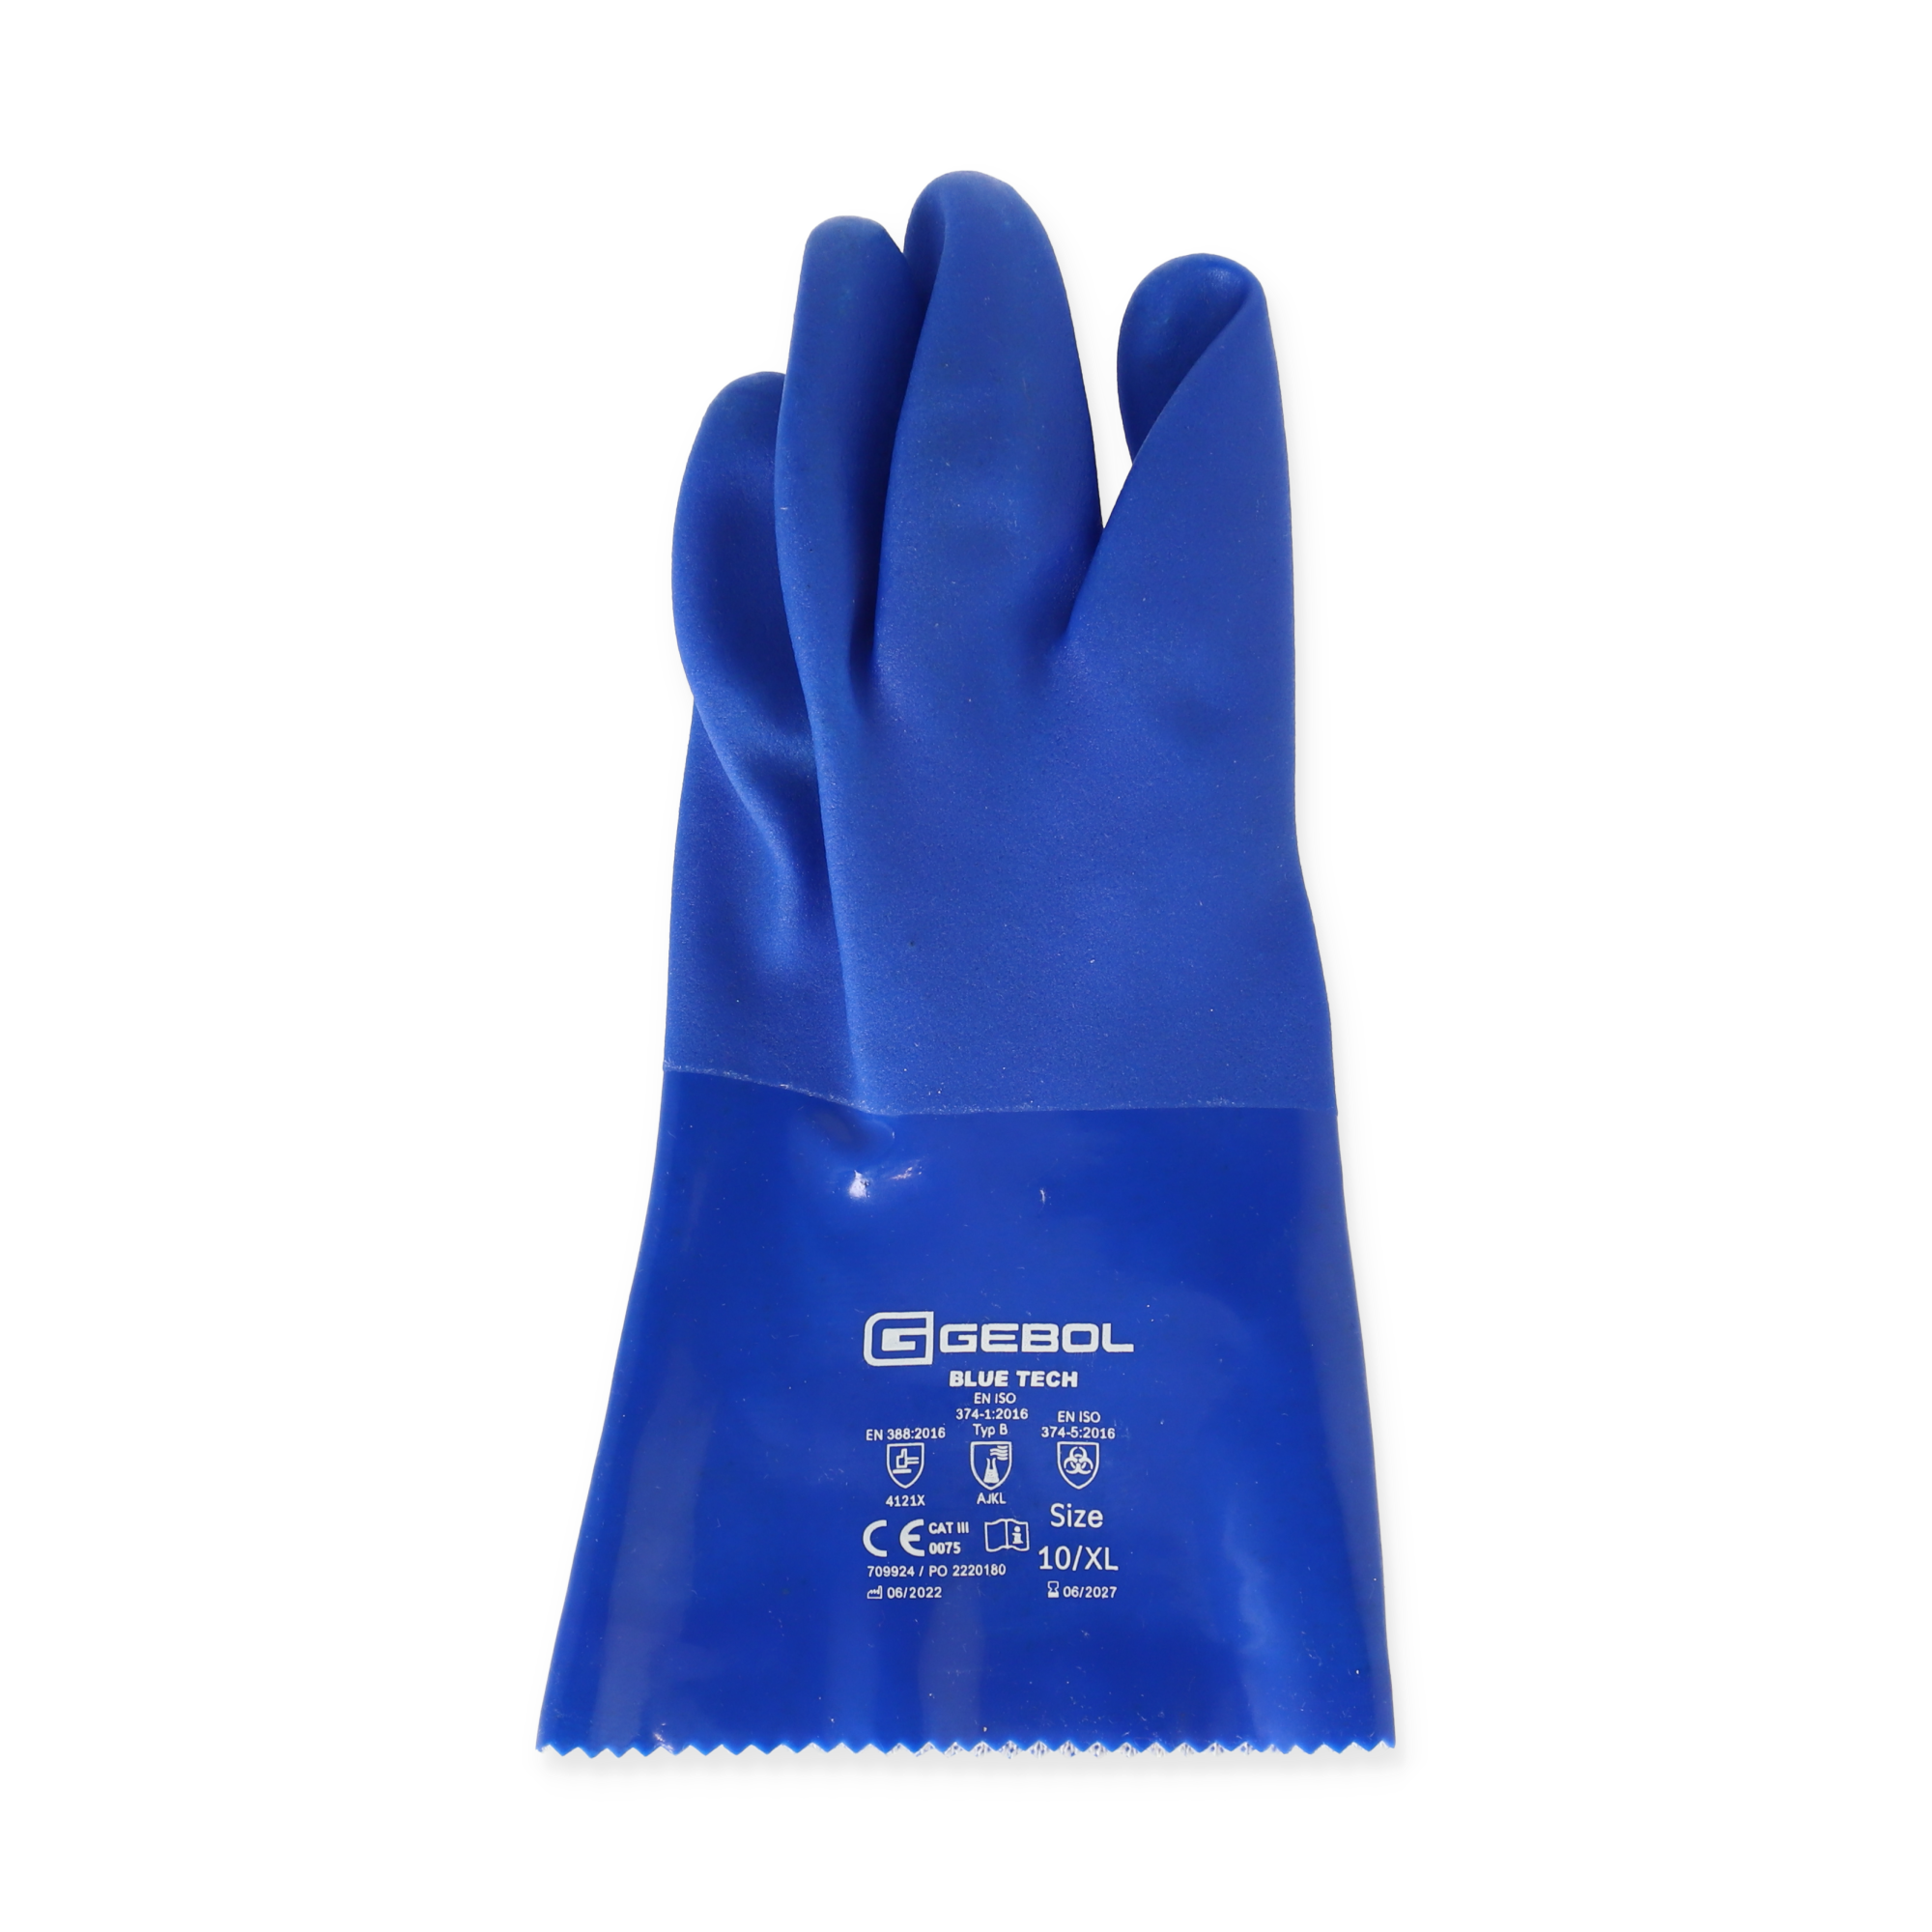 Handschuhe 'Blue Tech' blau Gr. 10 + product picture